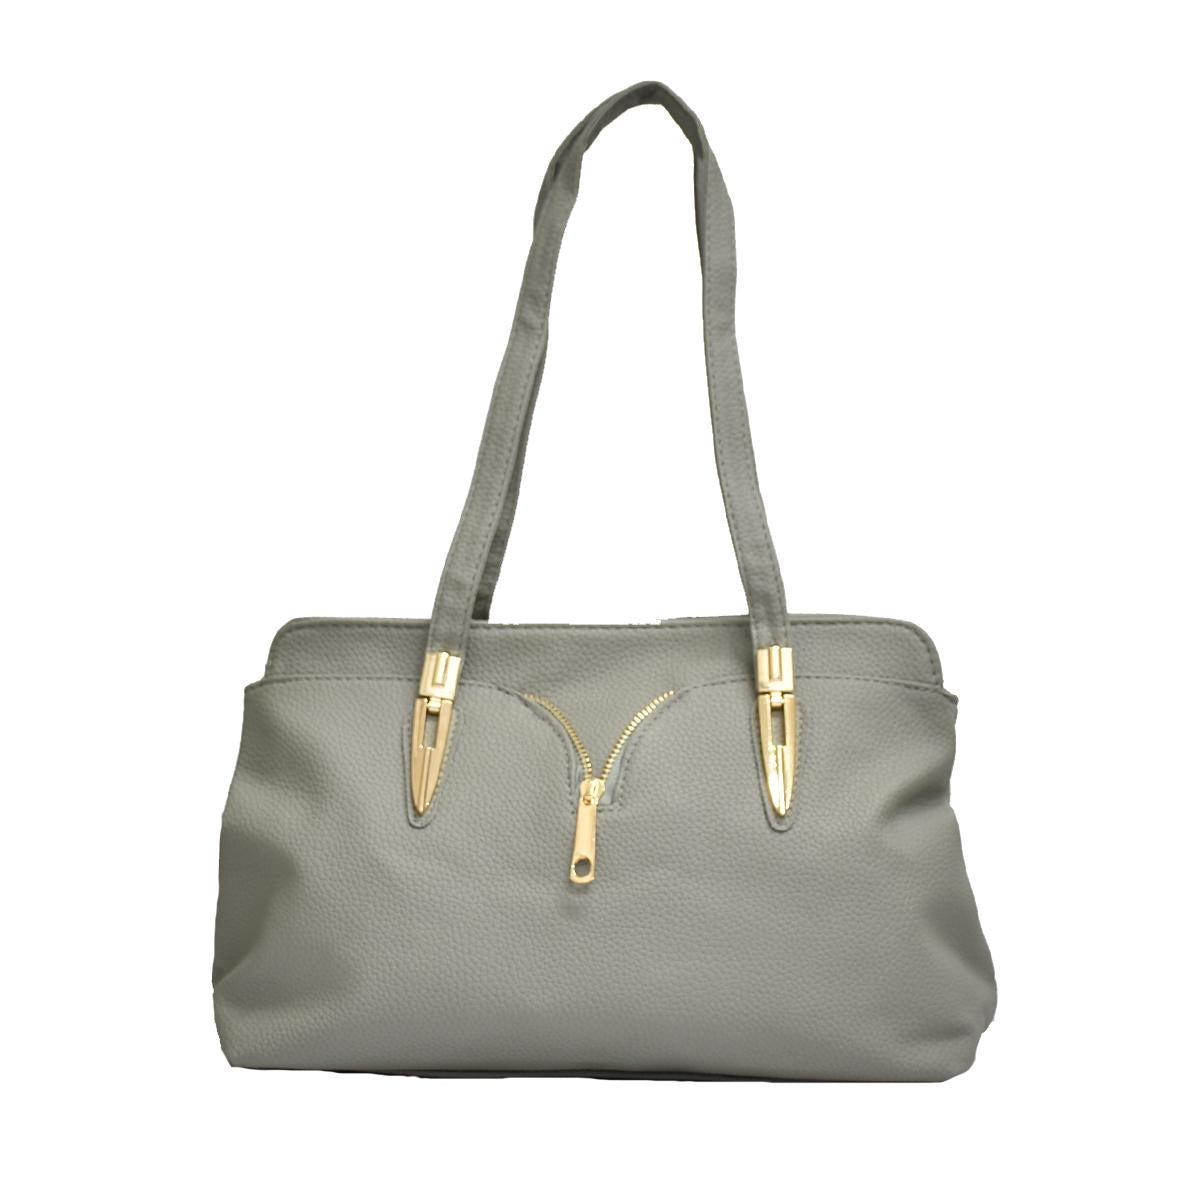 Crisan Bags - Sarah - Handbag-Crisan bags